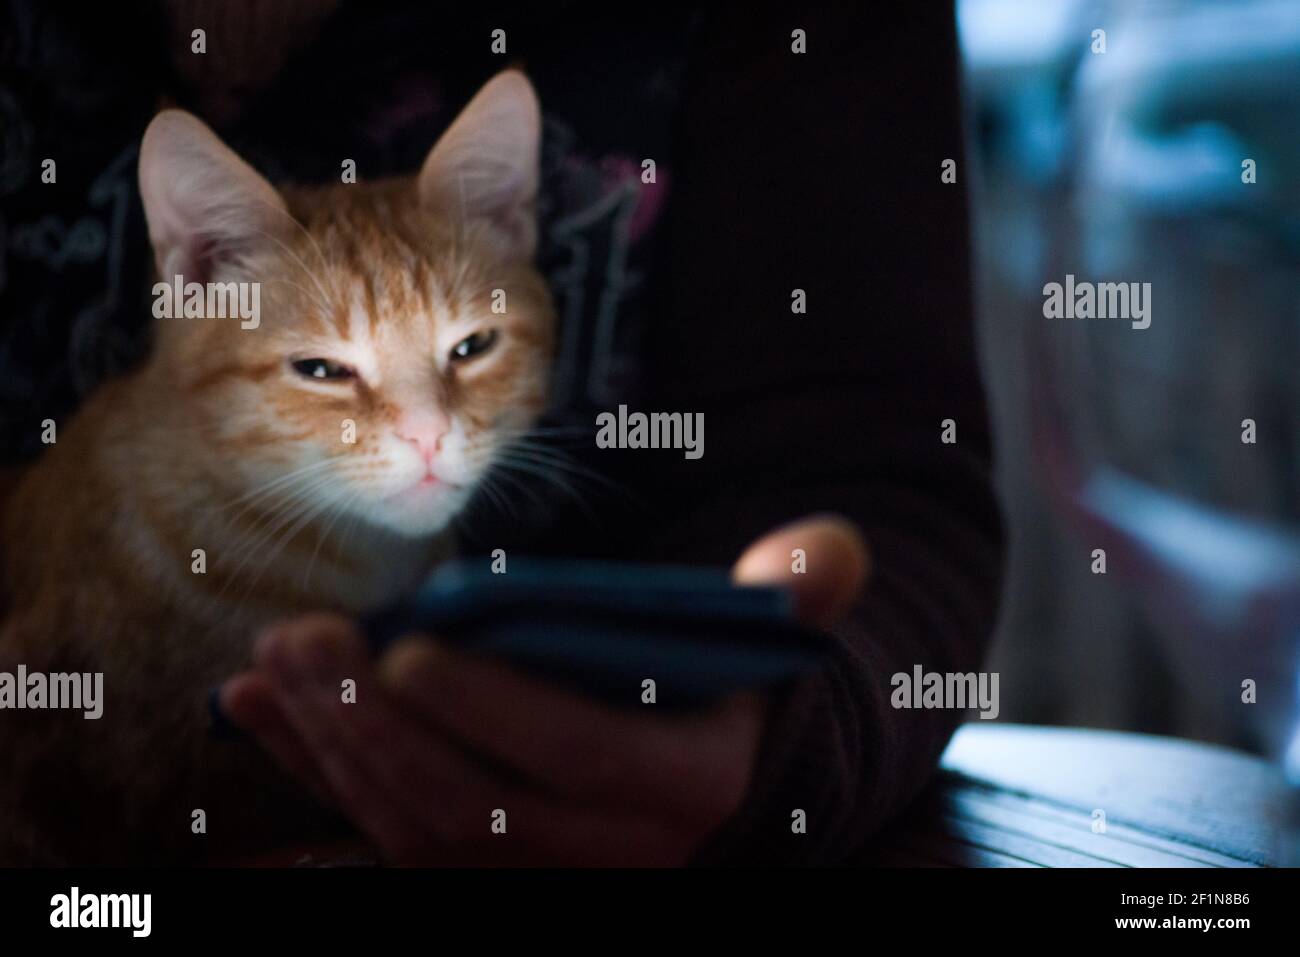 Divertente gattino rosso nella lite del telefono cellulare, in mano umana Foto Stock